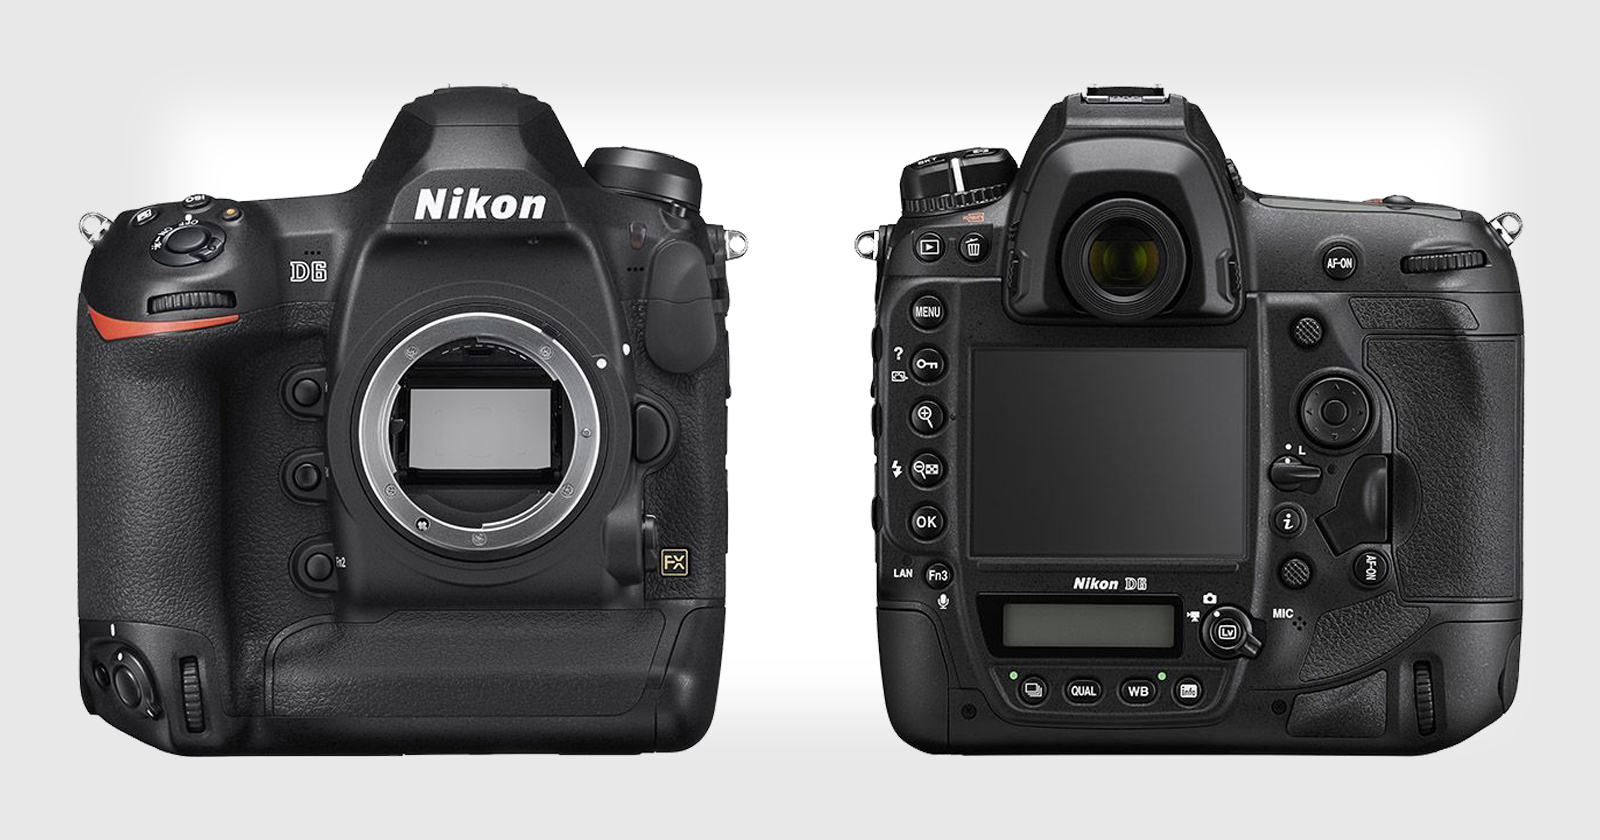 Fotos del producto Nikon D6 filtradas, la campaña de teaser es un gran desastre.